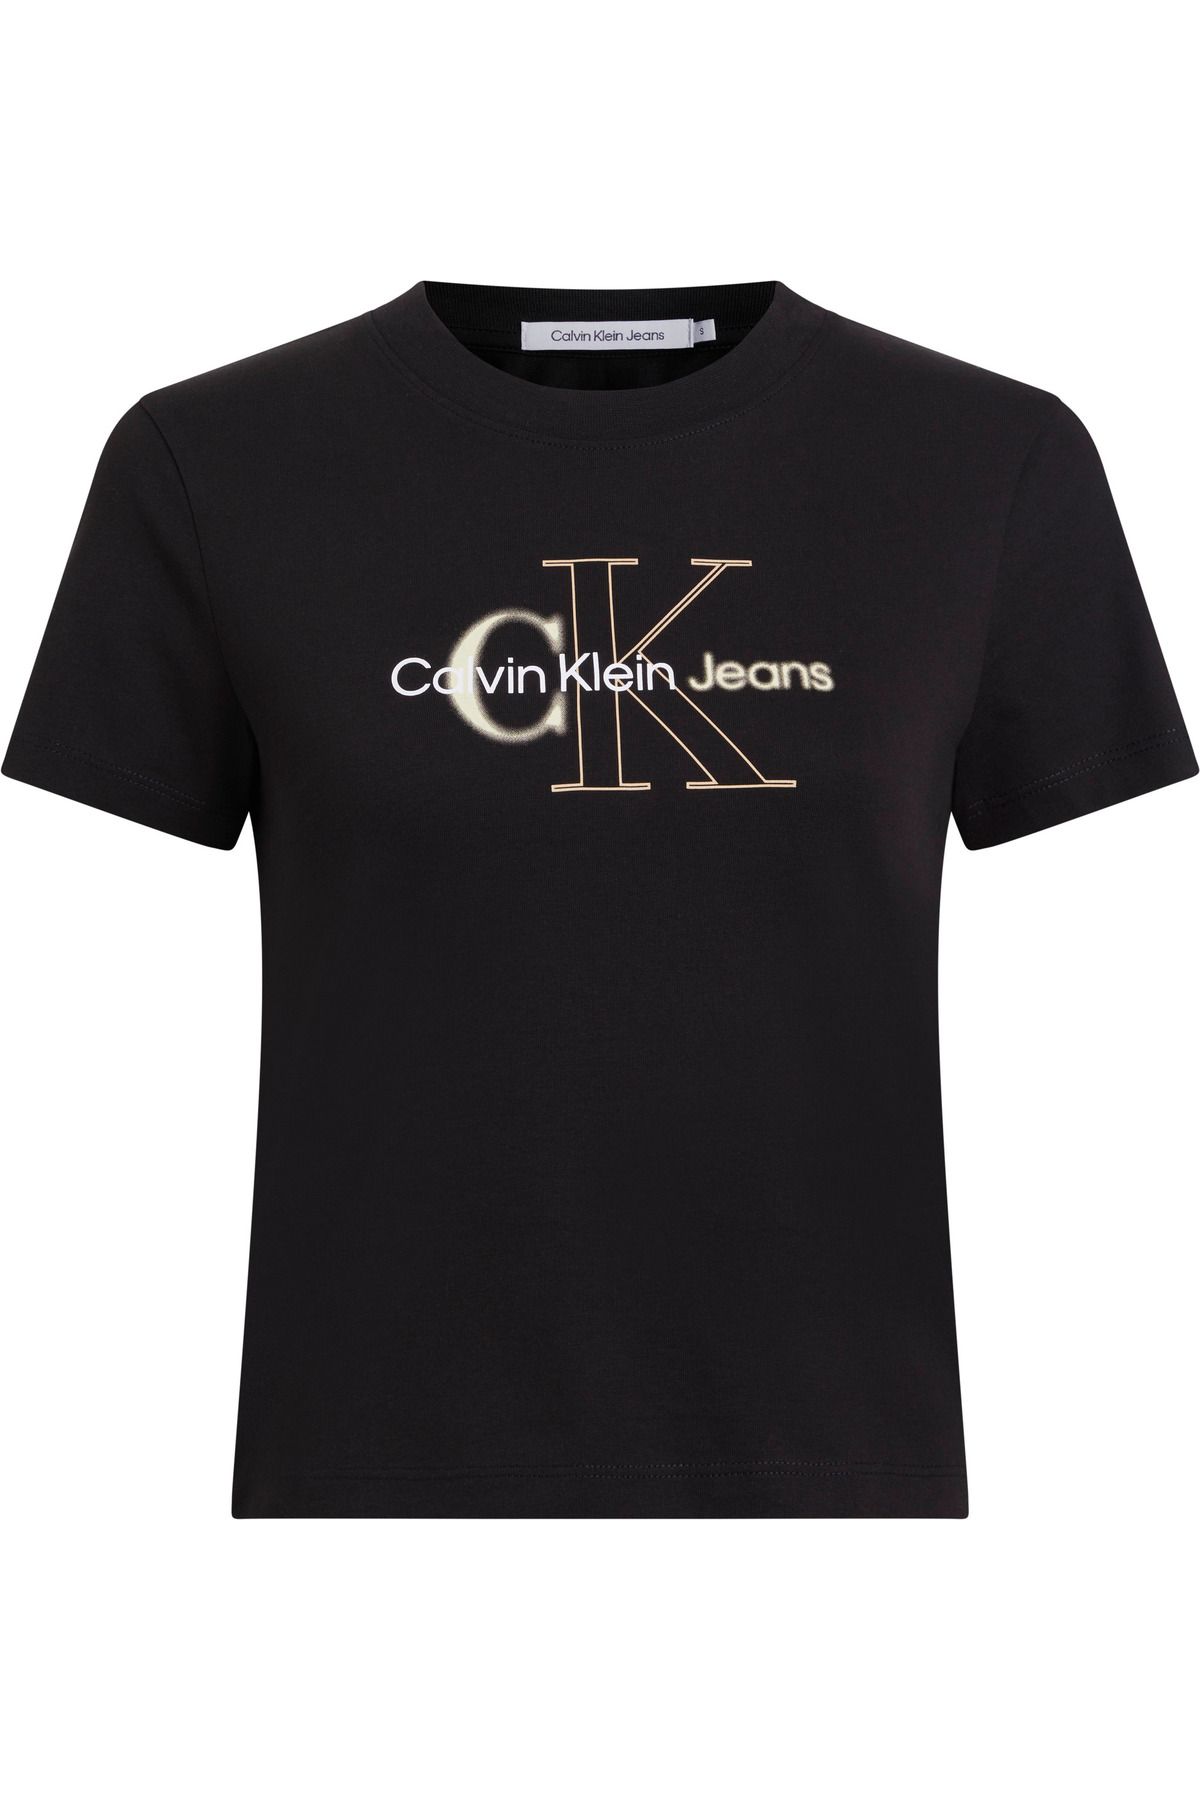 Calvin Klein Calvin Klein پیراهن زنانه نخی با لوگو سیاه